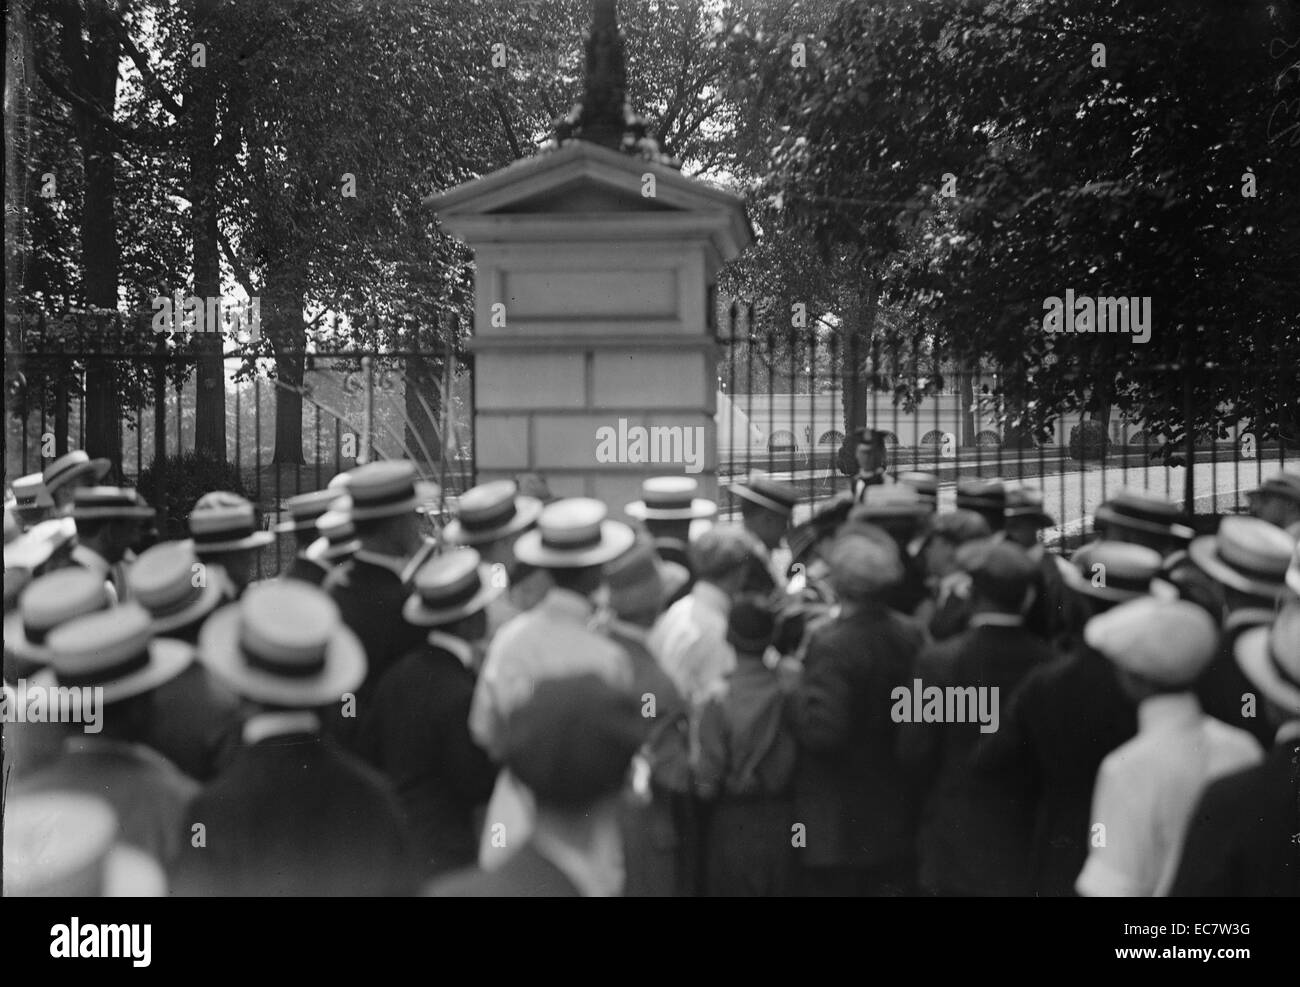 Le suffrage des femmes et des émeutes. Les femmes qui luttent pour leur droit de vote dans les années 1910. Banque D'Images